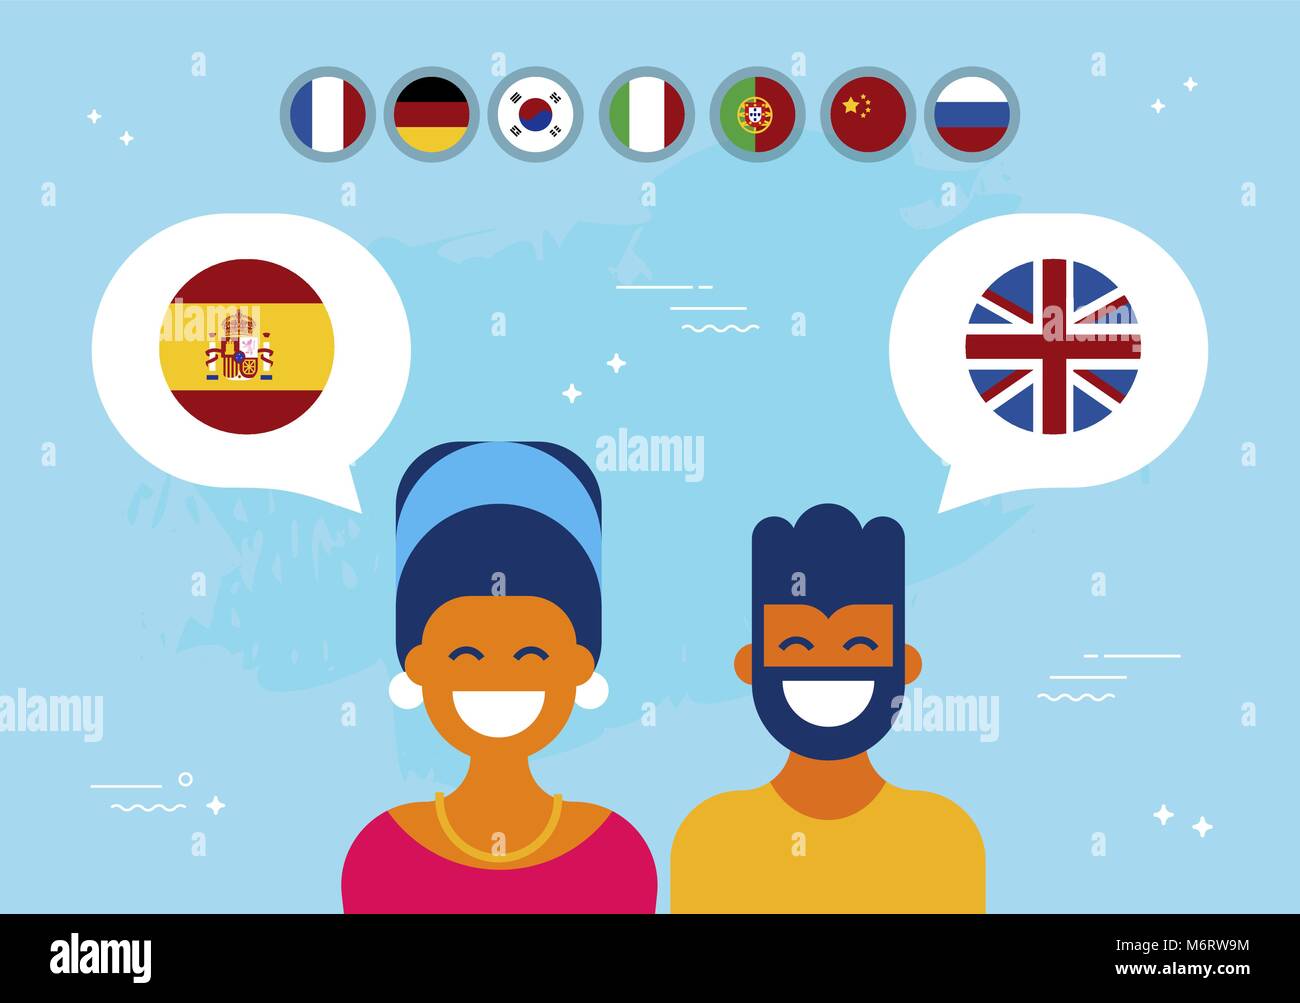 Kommunikation Übersetzung Konzeption Illustration, modernen Stil. Junge und Mädchen in on-line-Gespräch in Spanisch auf Englisch. EPS 10v Stock Vektor